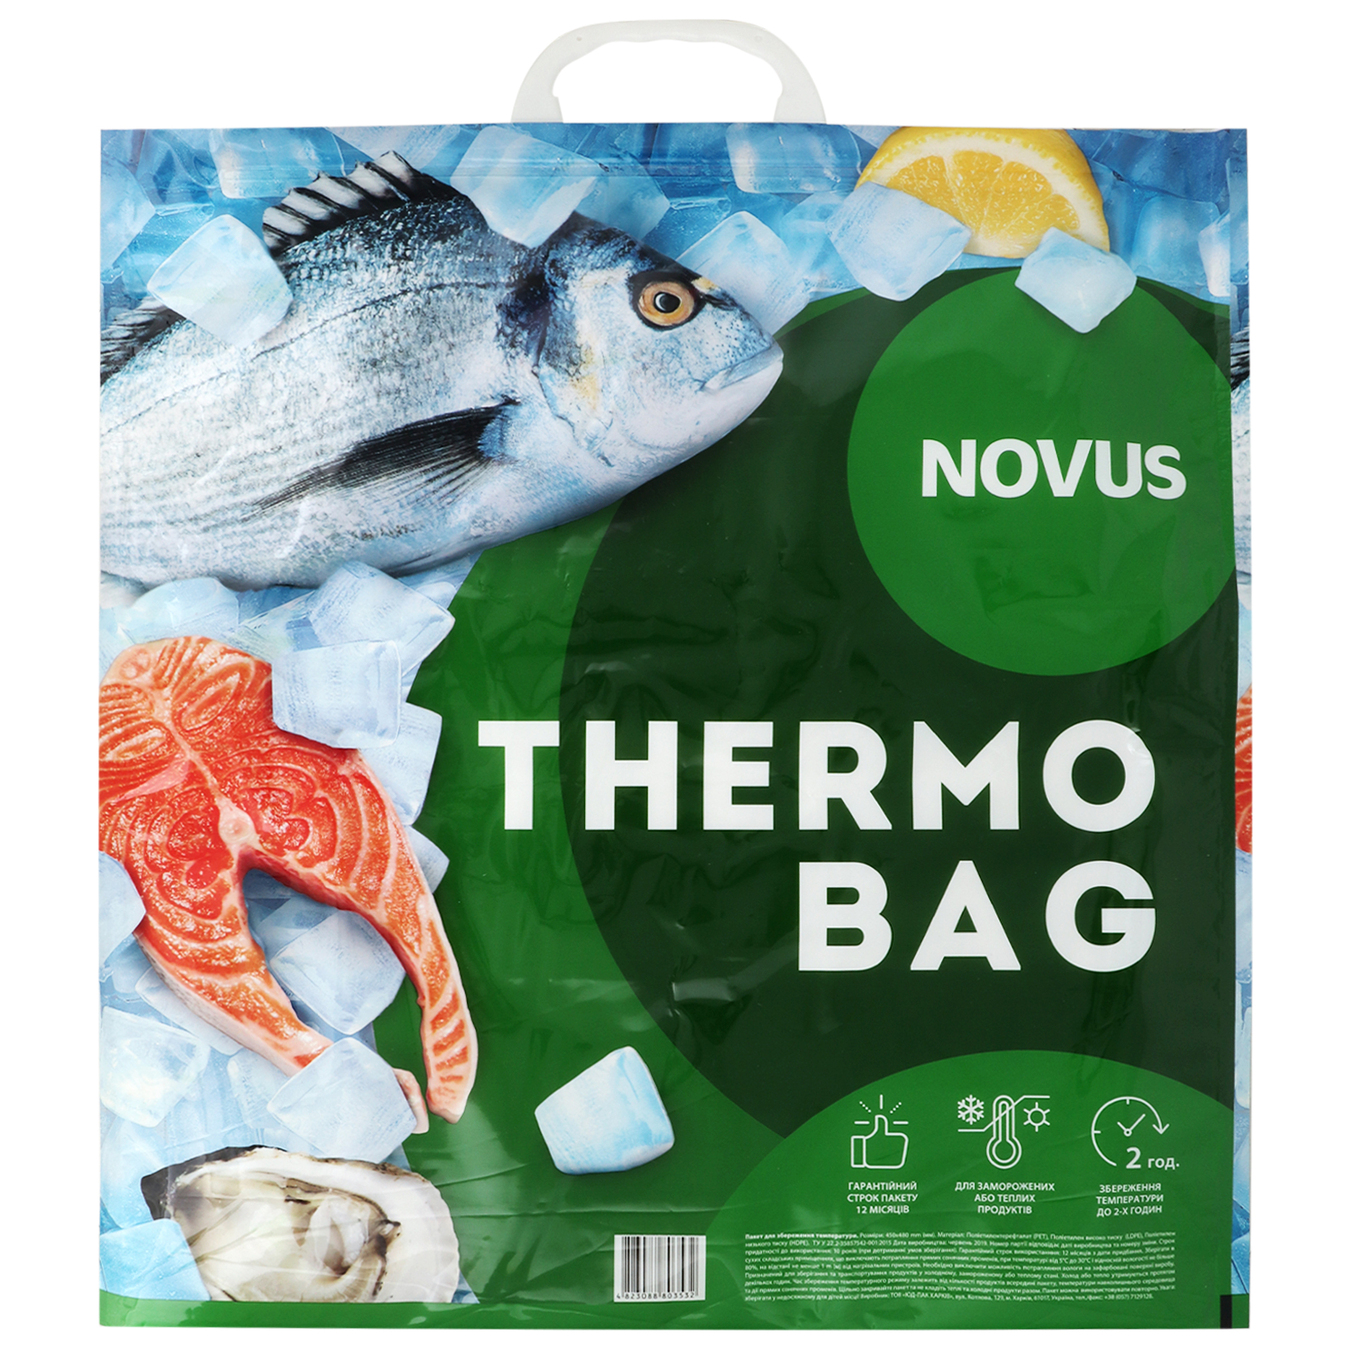 Thermal bag NOVUS 45x48 2